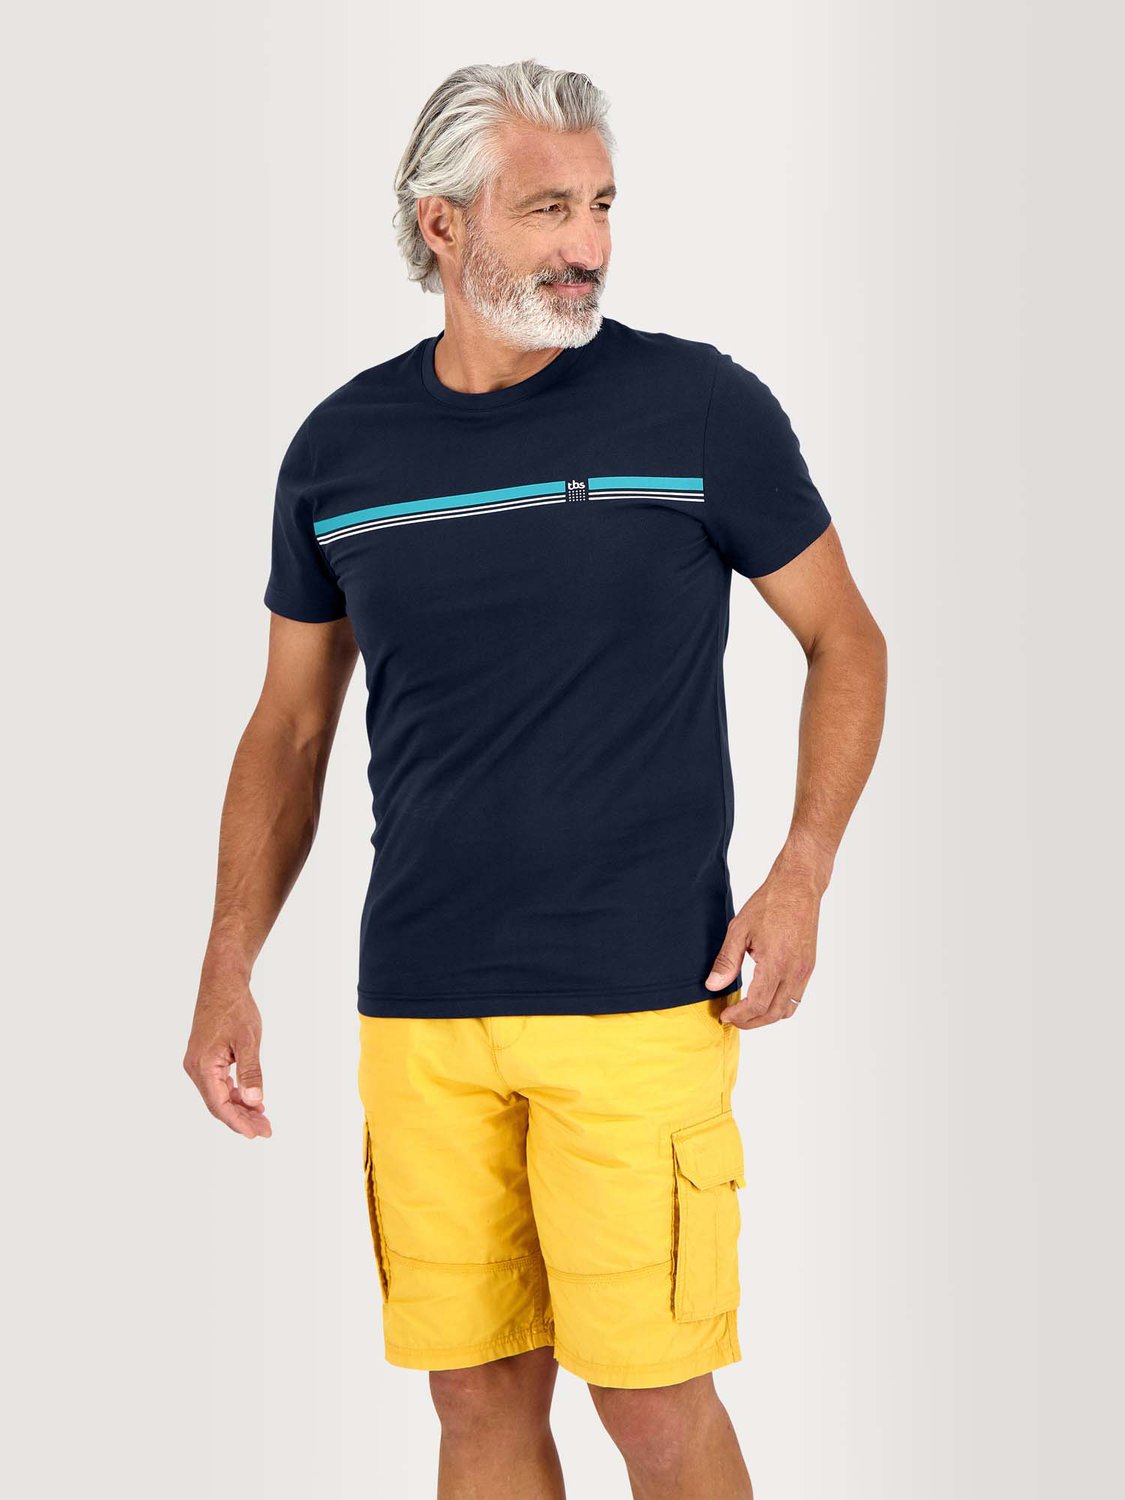 Tee Shirt Homme Manches Courtes Coton Biologique Marine